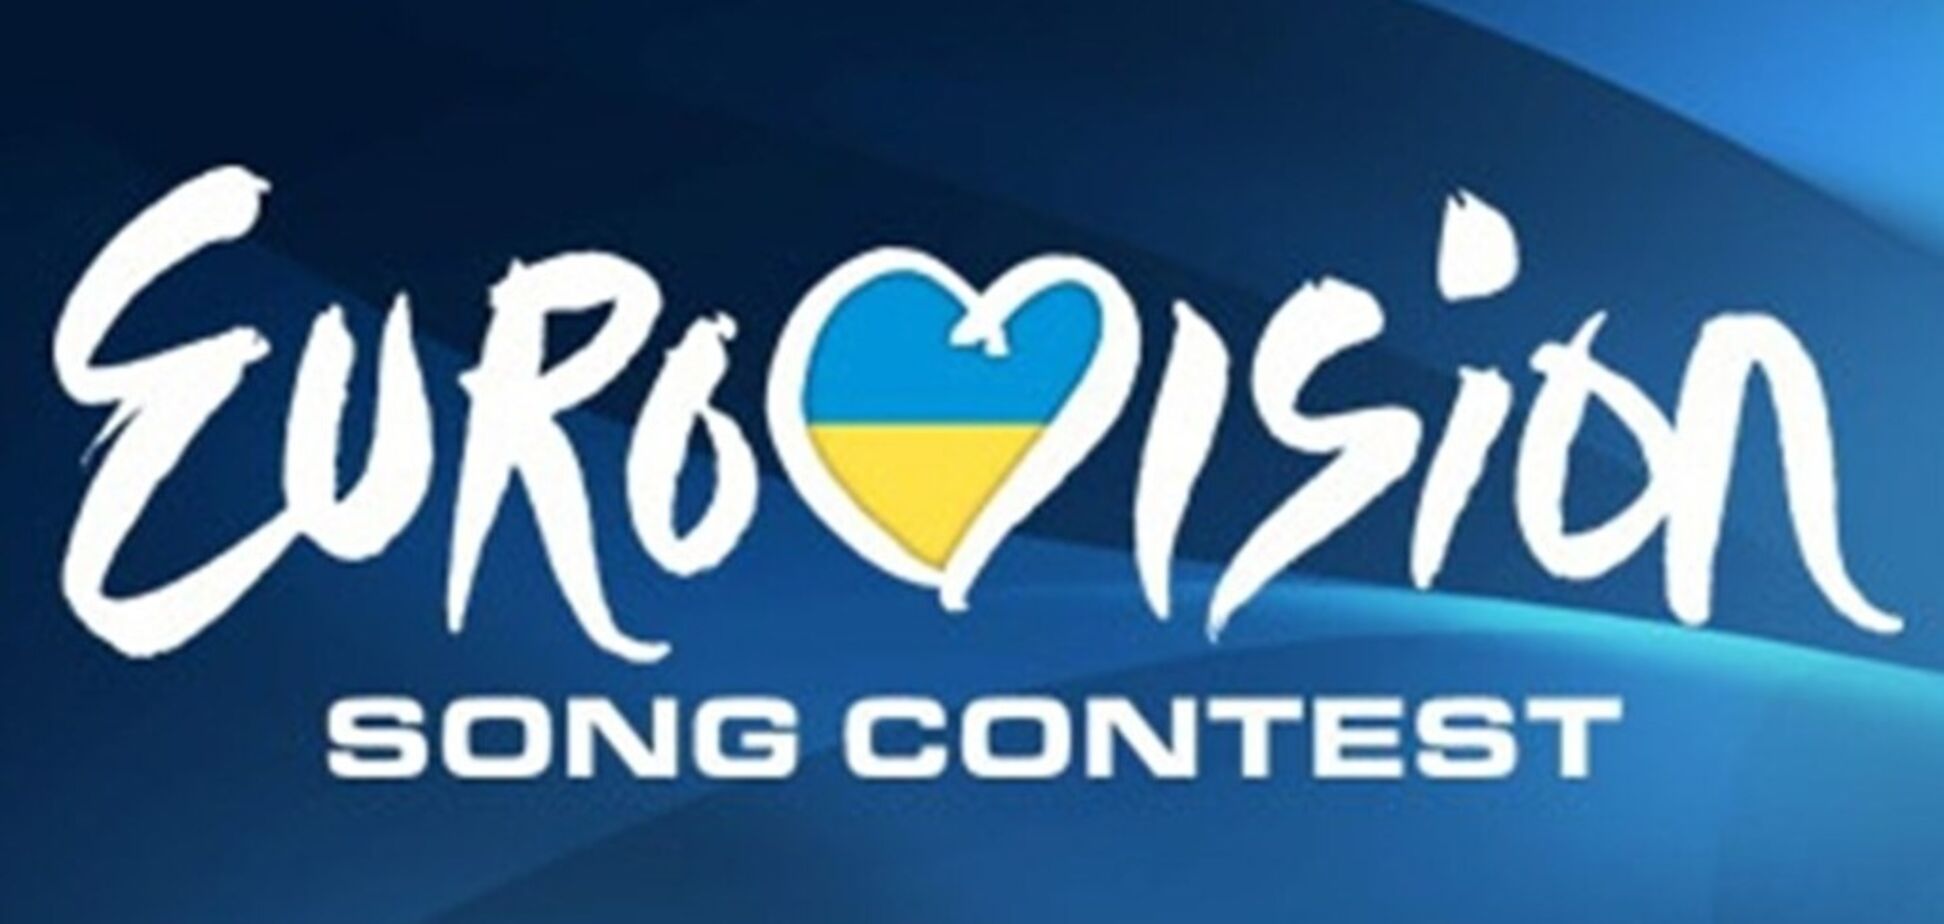 Нацвідбір на Євробачення-2020: опублікований список учасників